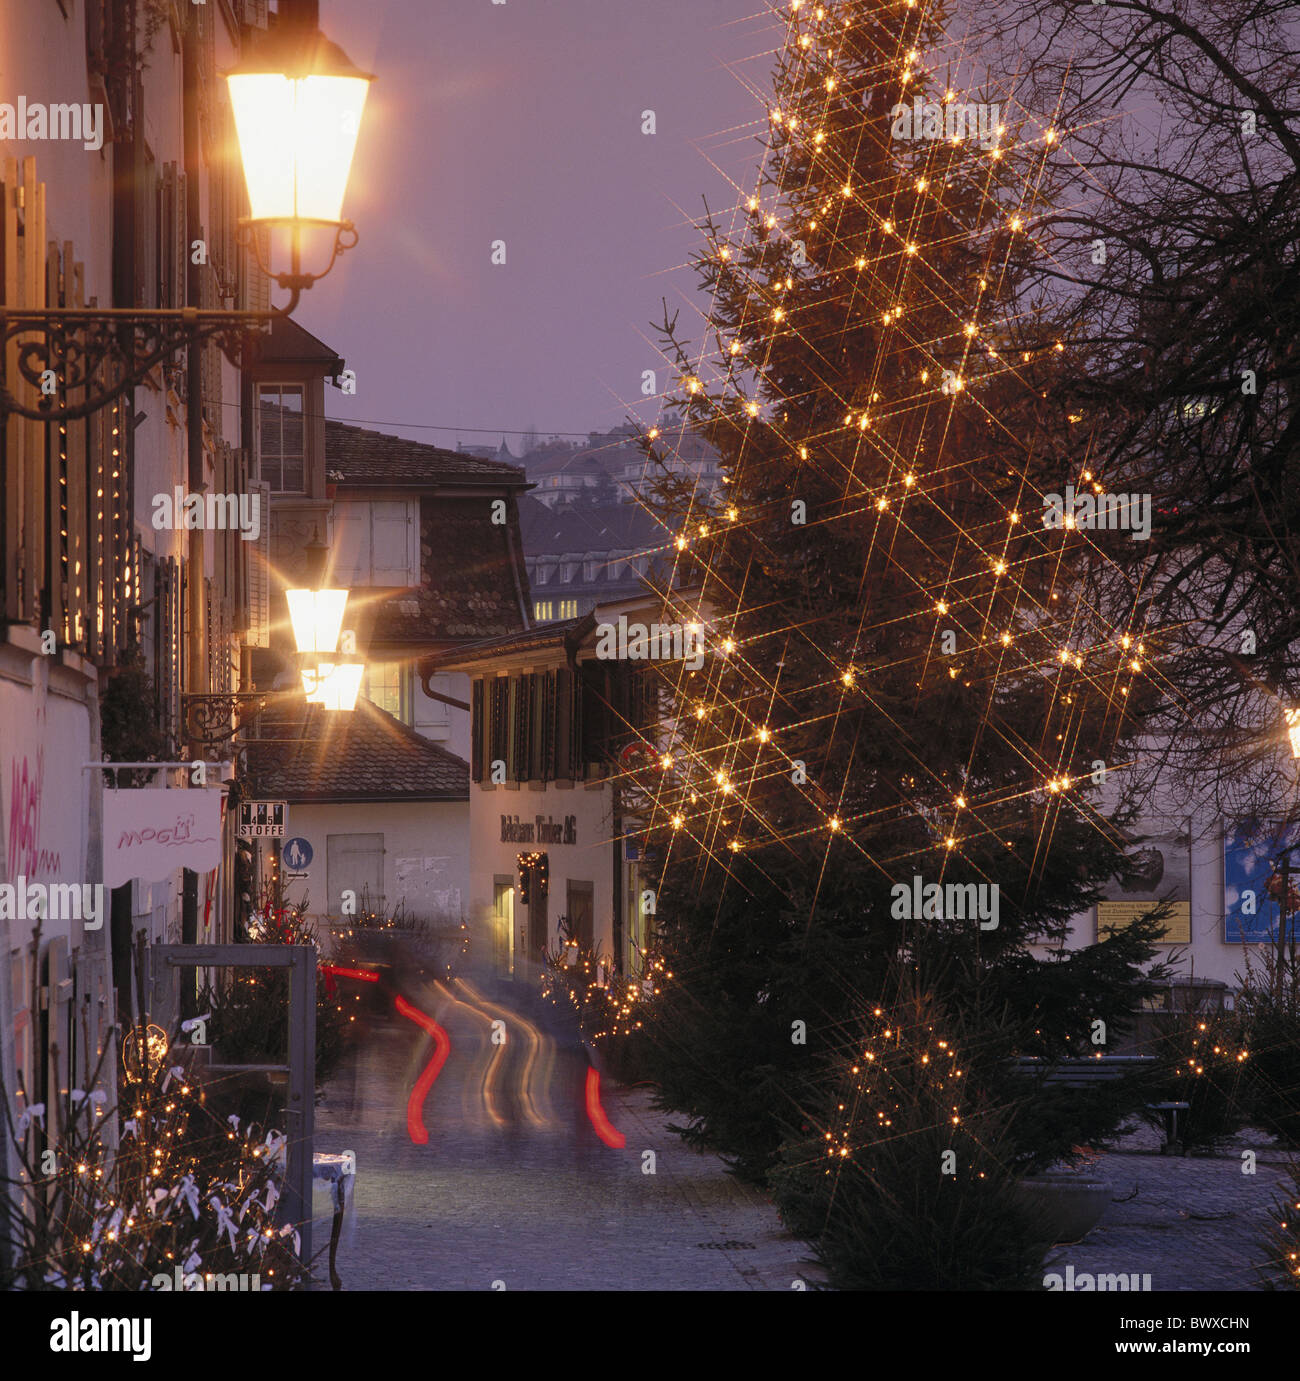 Weihnachtsbaum Lichter in der Nacht Schipfe Schweiz Europa Weihnachten-Stadt  Zürich Stockfotografie - Alamy